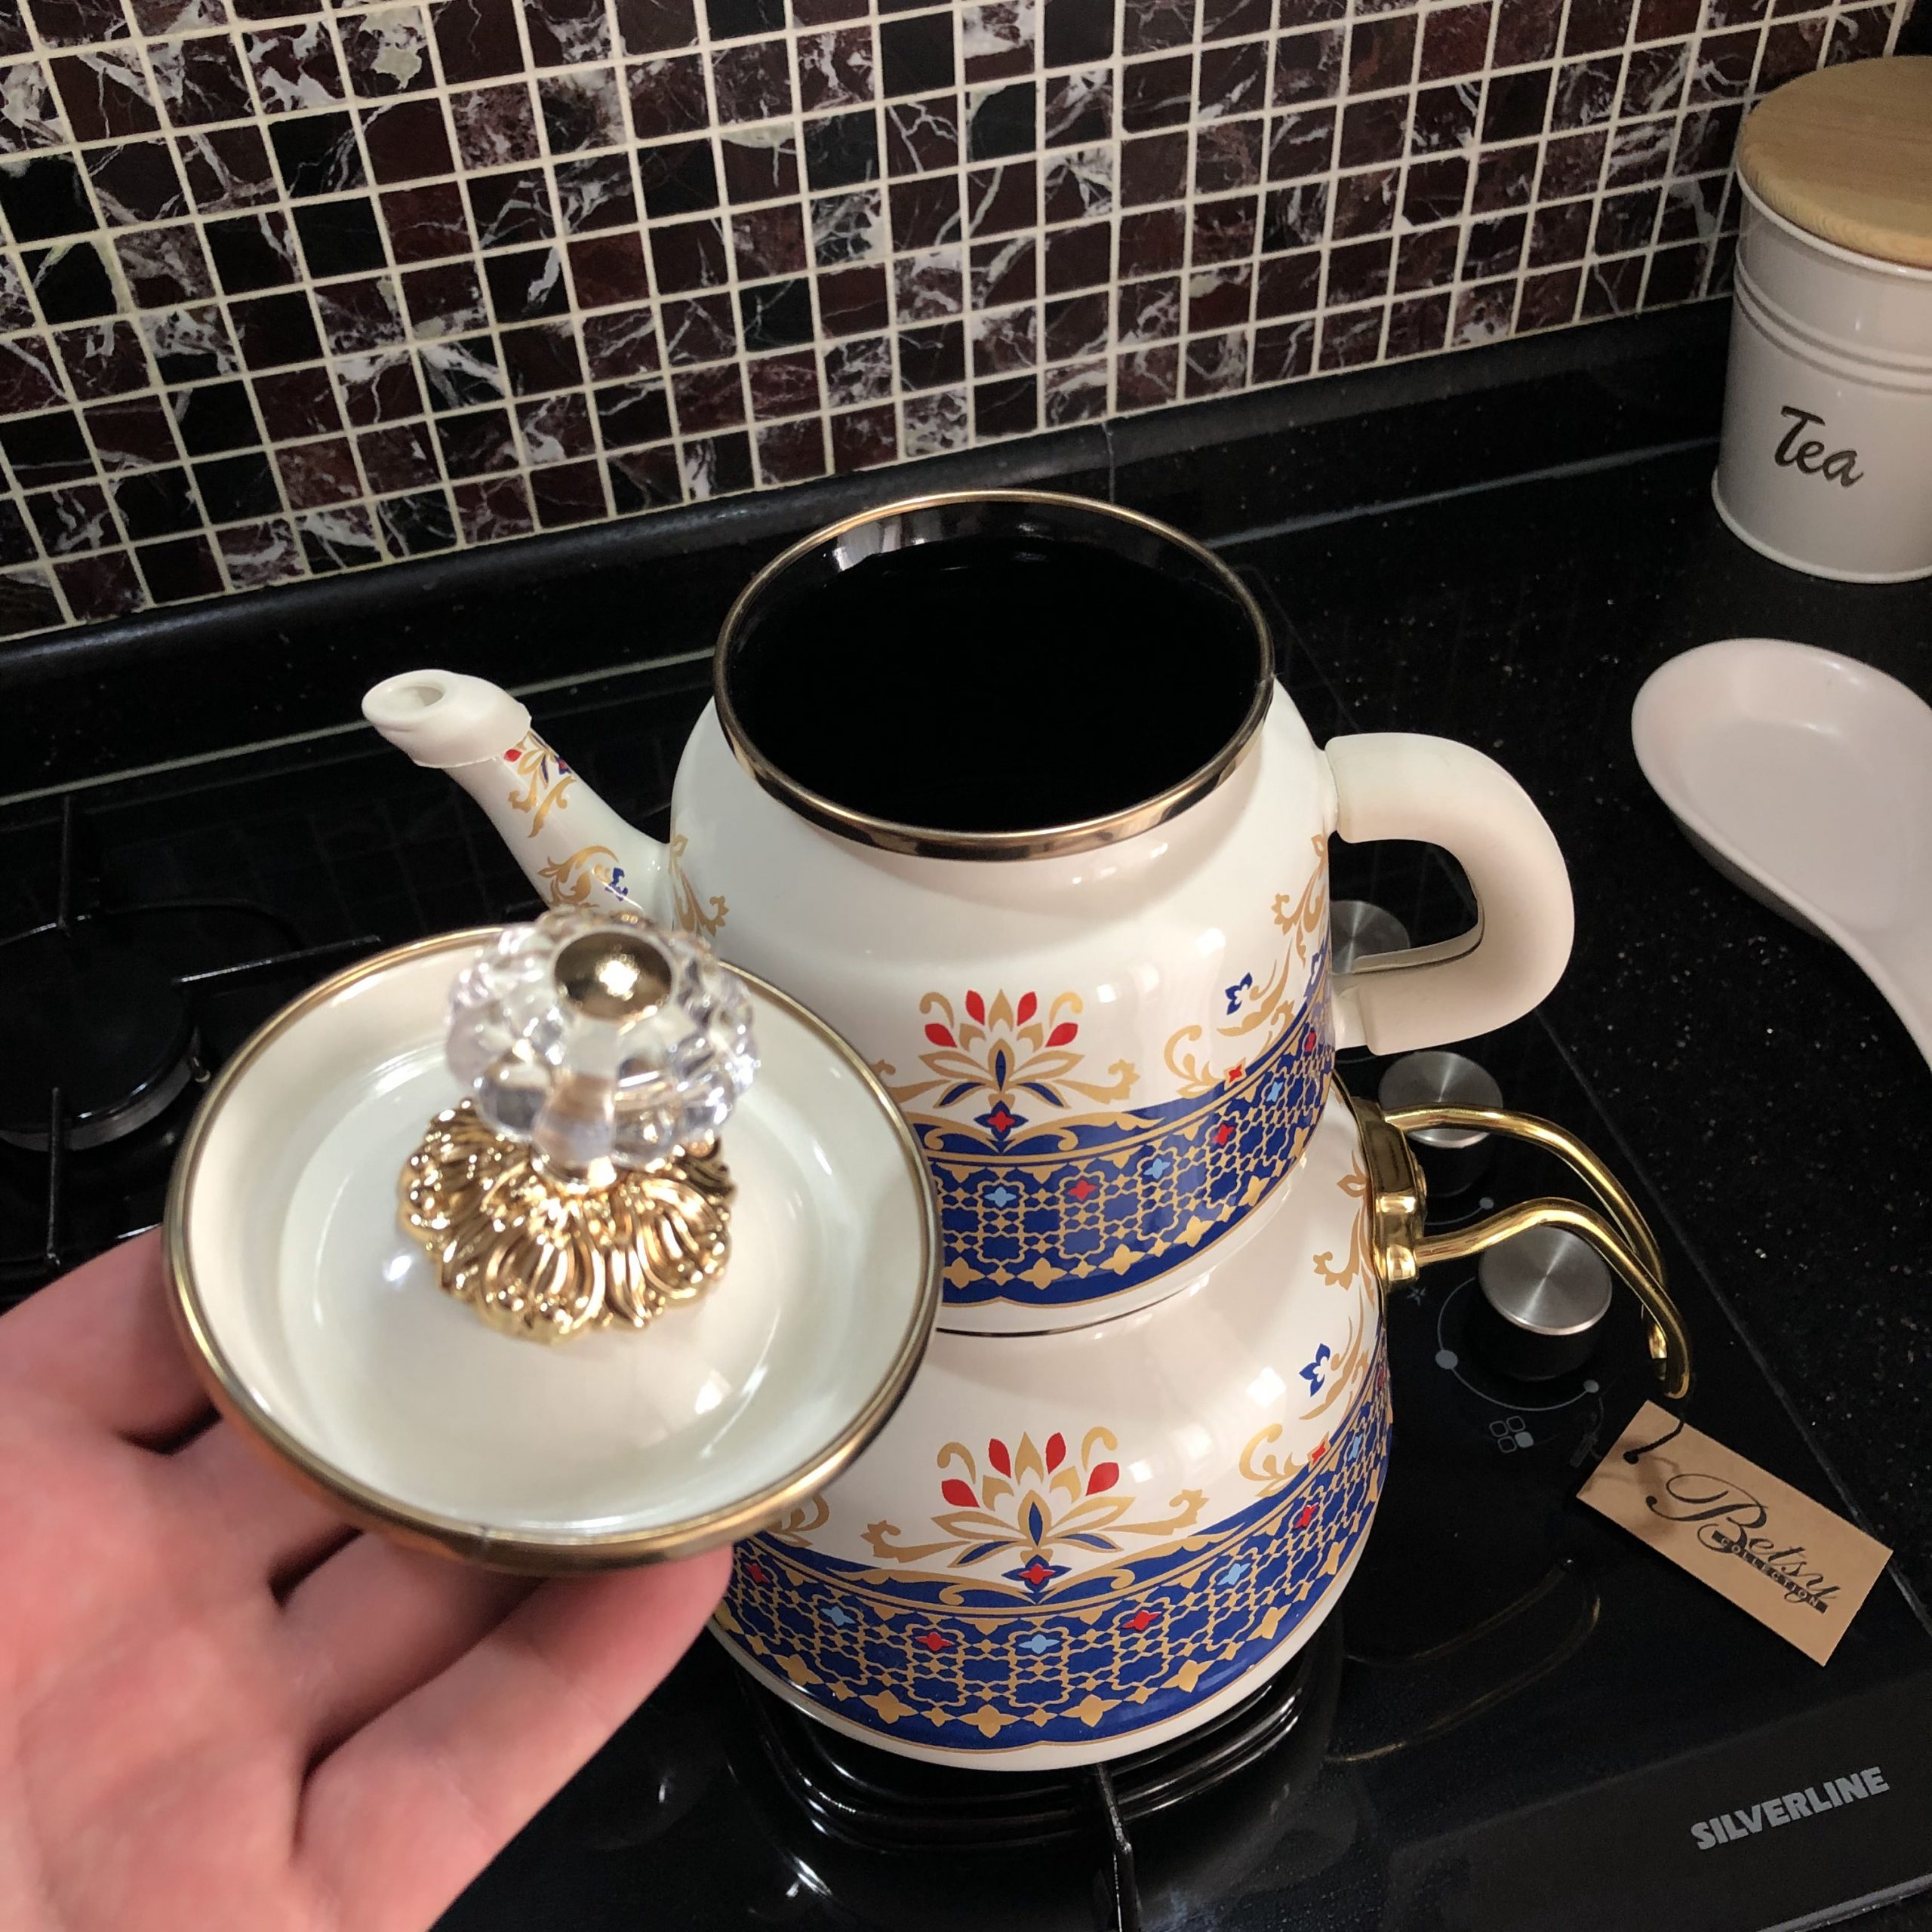 https://traditionalturk.com/wp-content/uploads/2021/08/vintage-pattern-enamel-turkish-tea-pot-kettle-1-scaled.jpeg